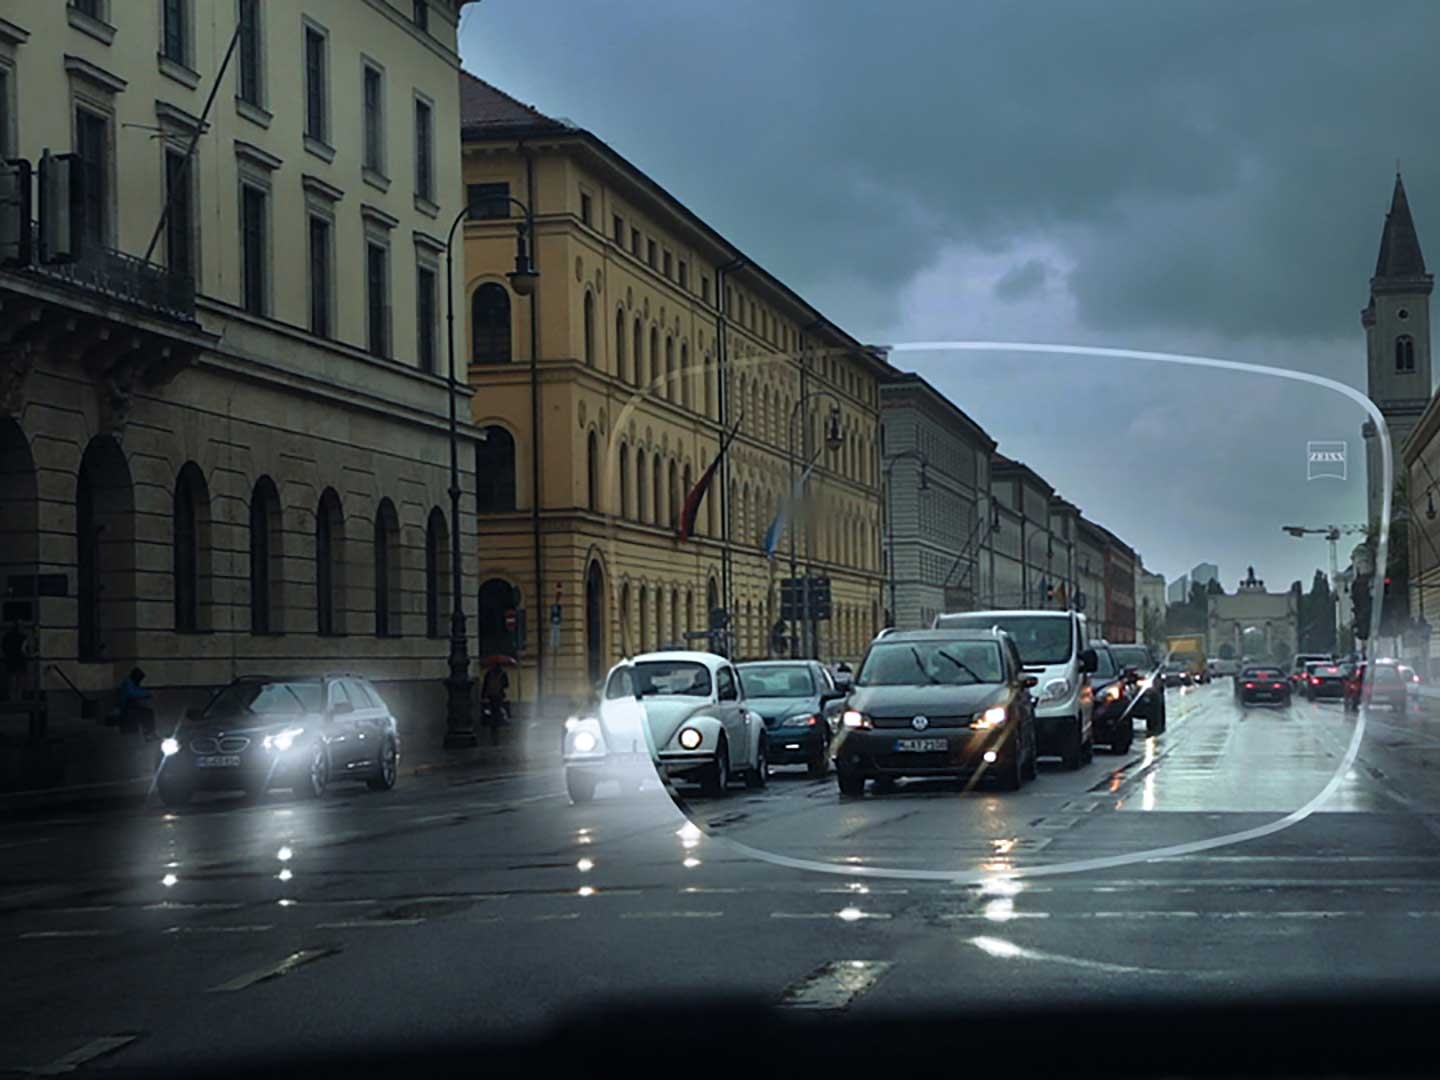 Рисунок ілюструє погану видимість на вулиці в умовах недостатнього освітлення. Вид на салон автомобіля крізь окулярні лінзи. 